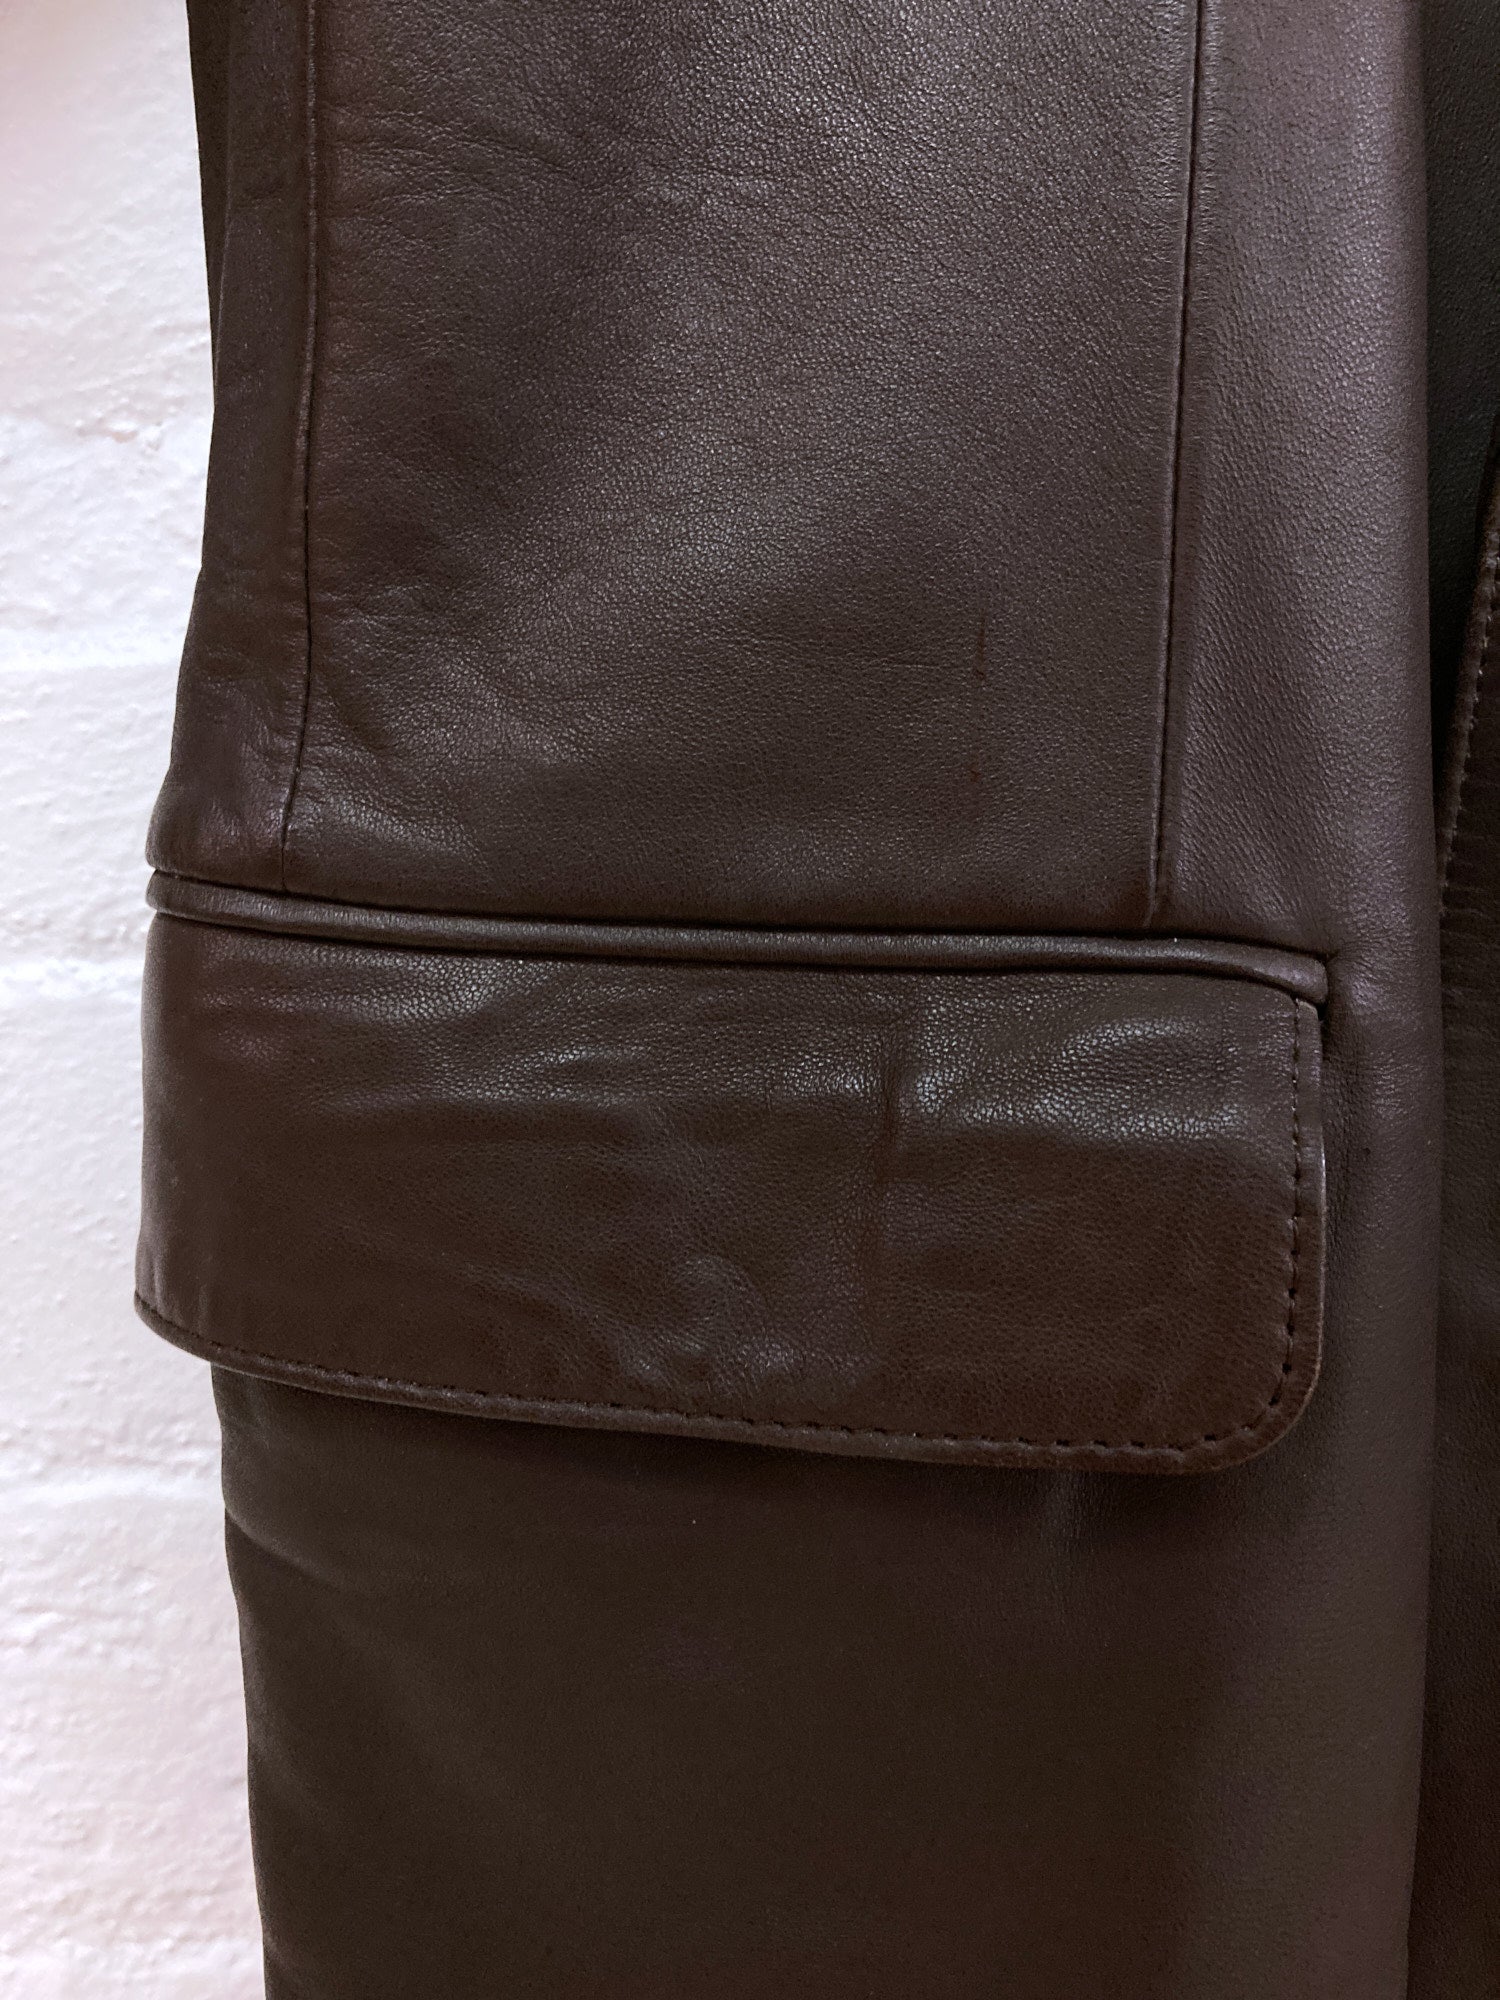 Moga Yoshie Inaba 1980s dark brown leather 2 button blazer - M L